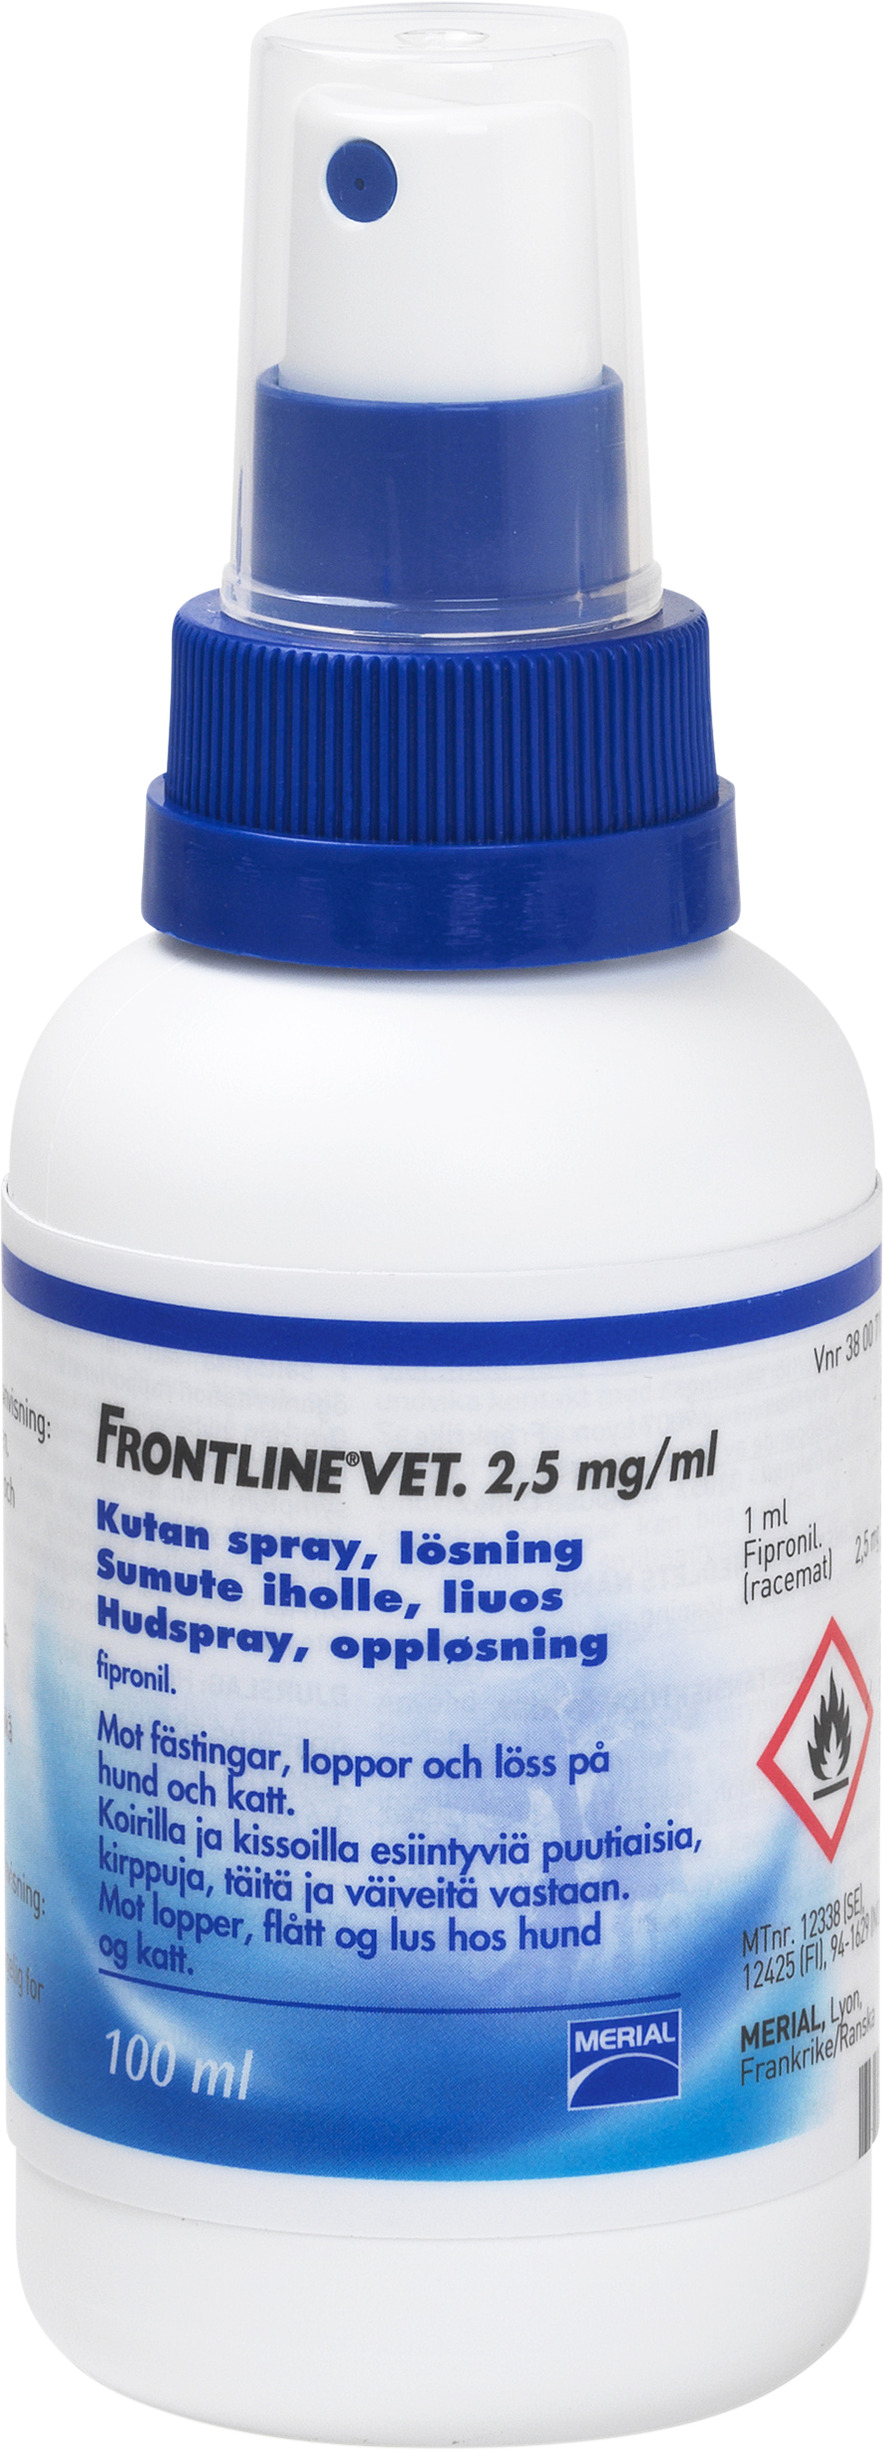 Frontline Vet. Kutan spray 2,5 mg/ml 100 ml